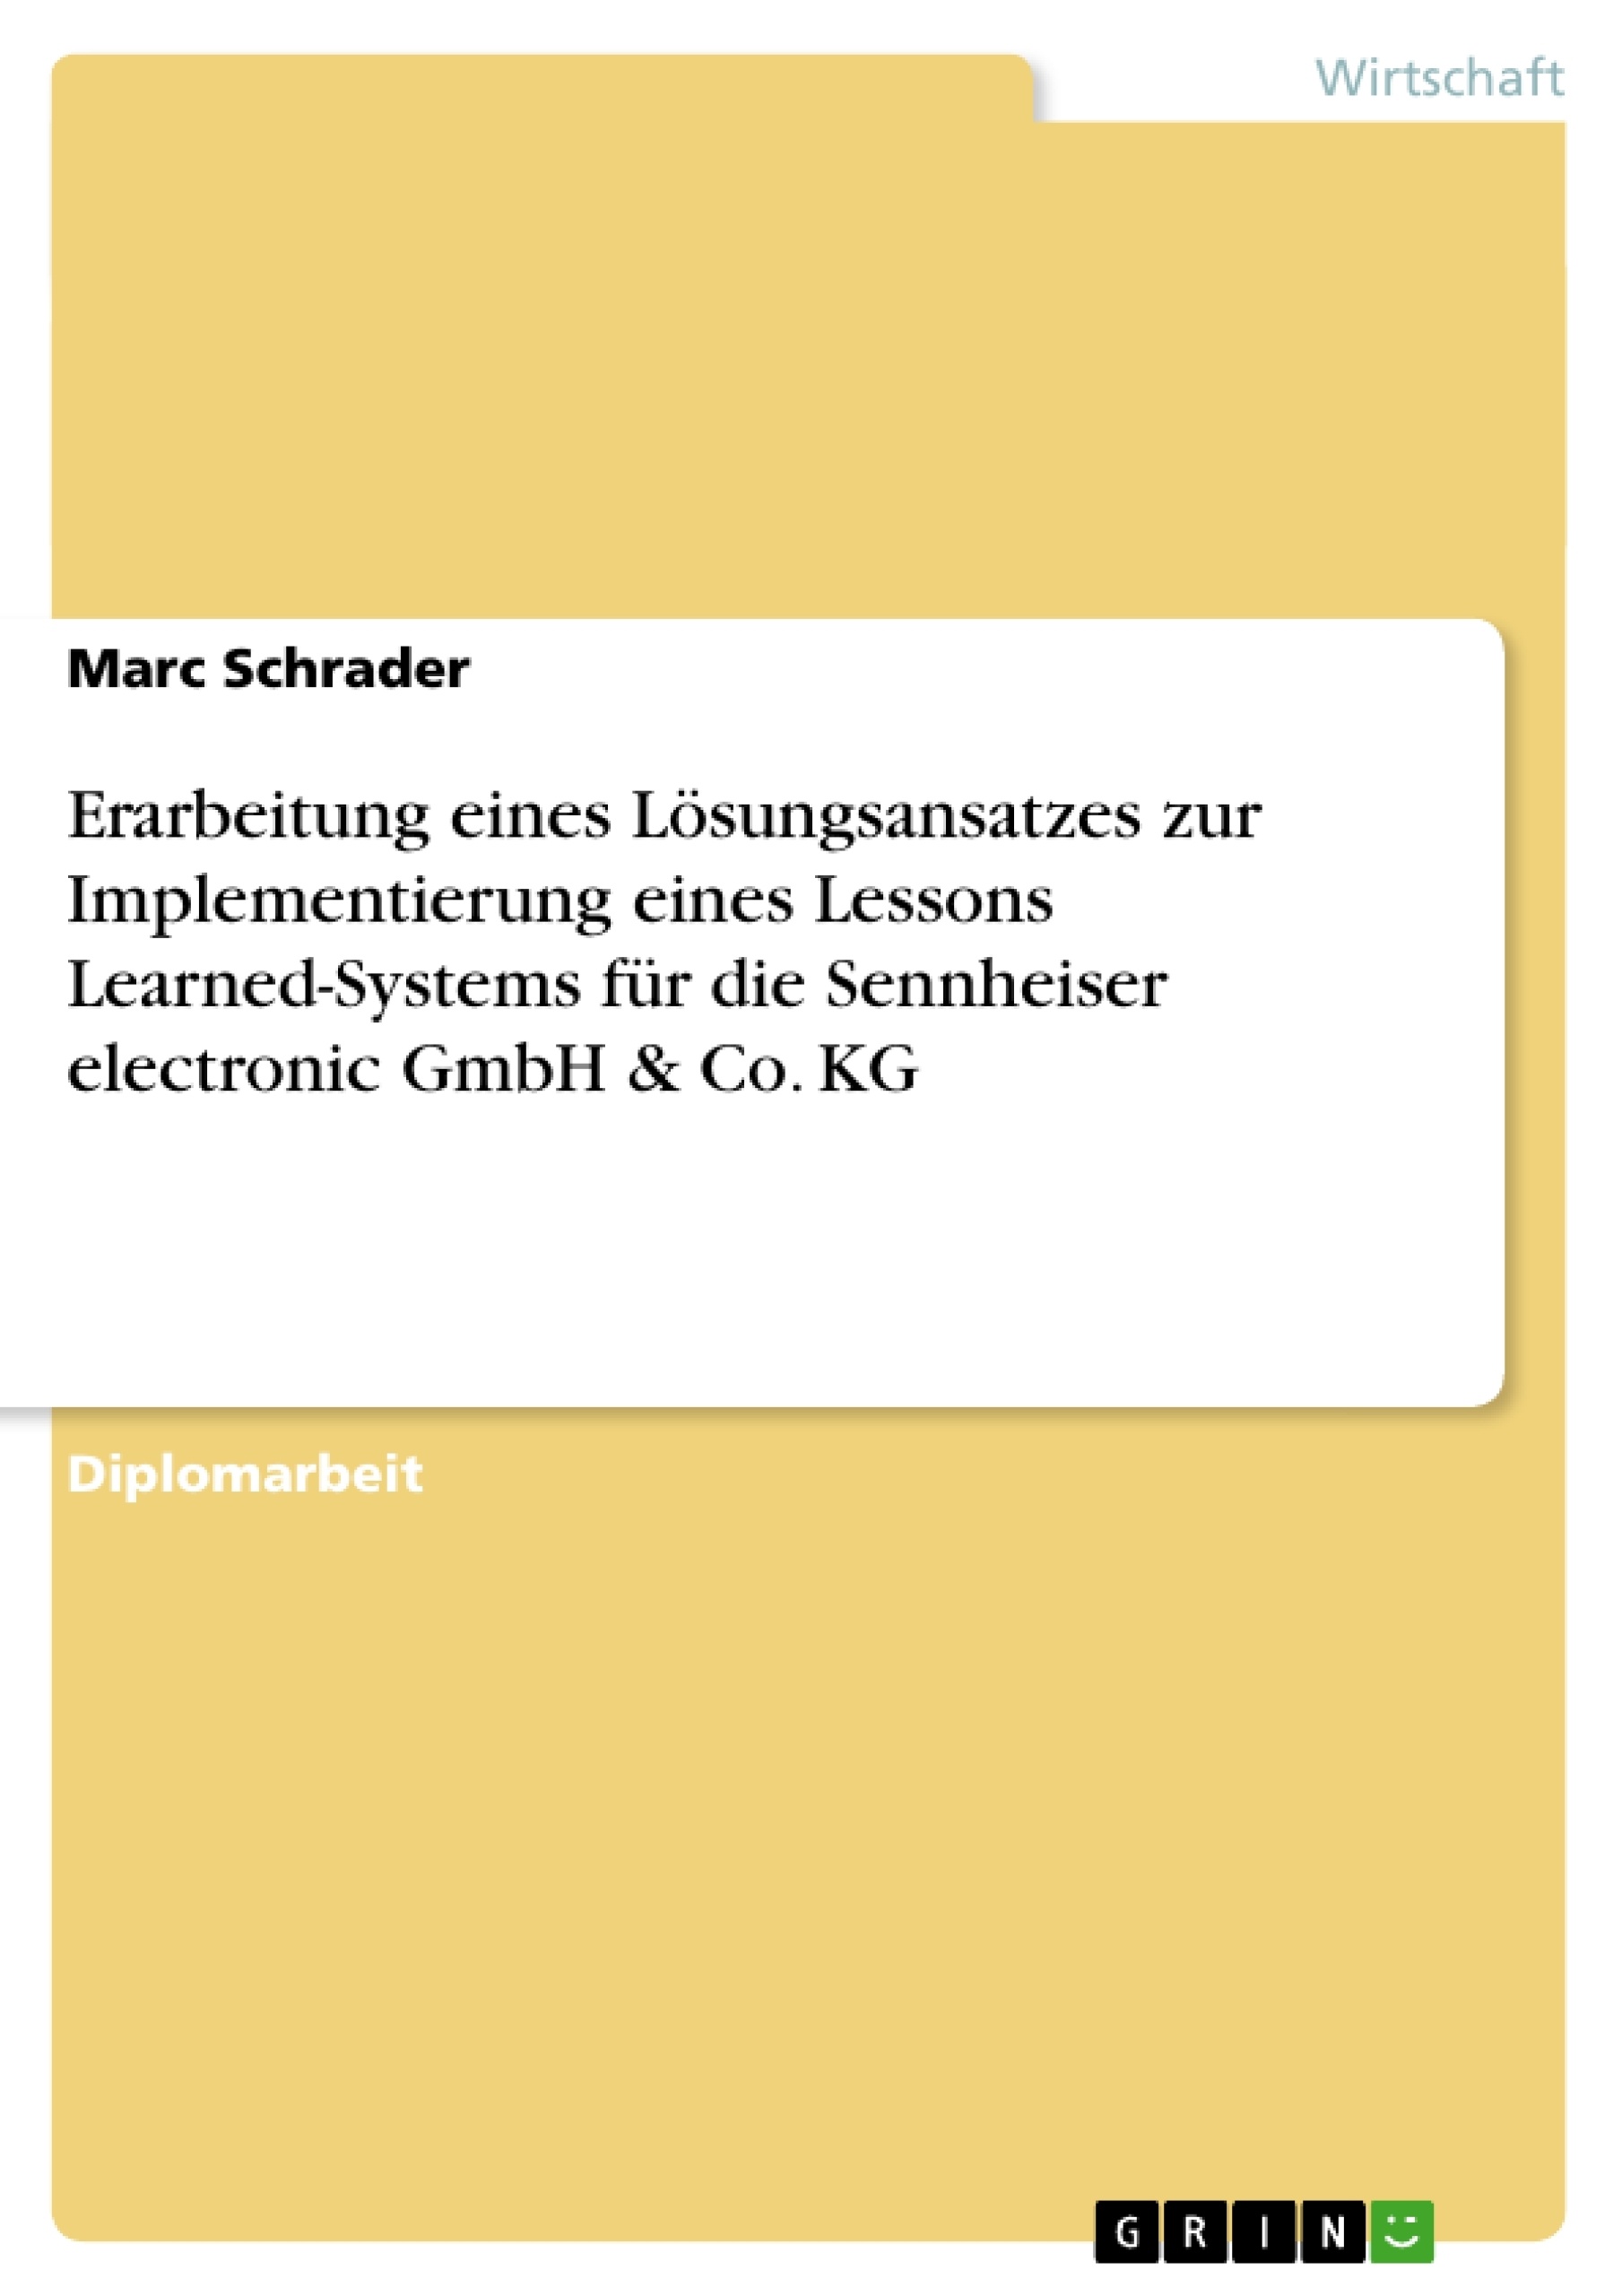 Titel: Erarbeitung eines Lösungsansatzes zur Implementierung eines Lessons Learned-Systems für die Sennheiser electronic GmbH & Co. KG